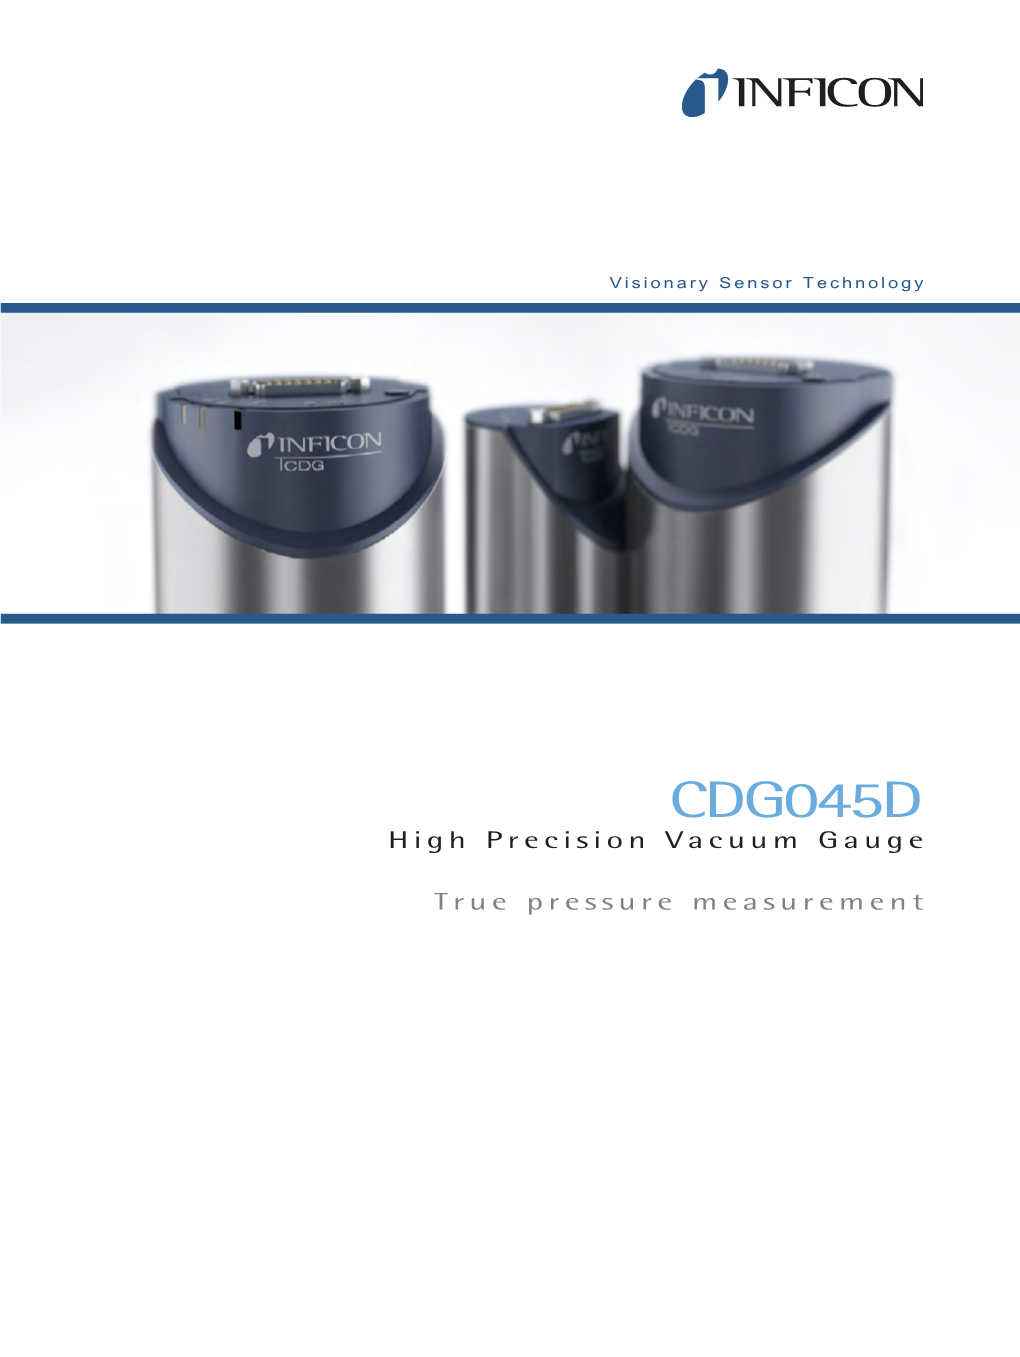 Inficon CDG045D Vacuum Gauge Brochure.Pdf